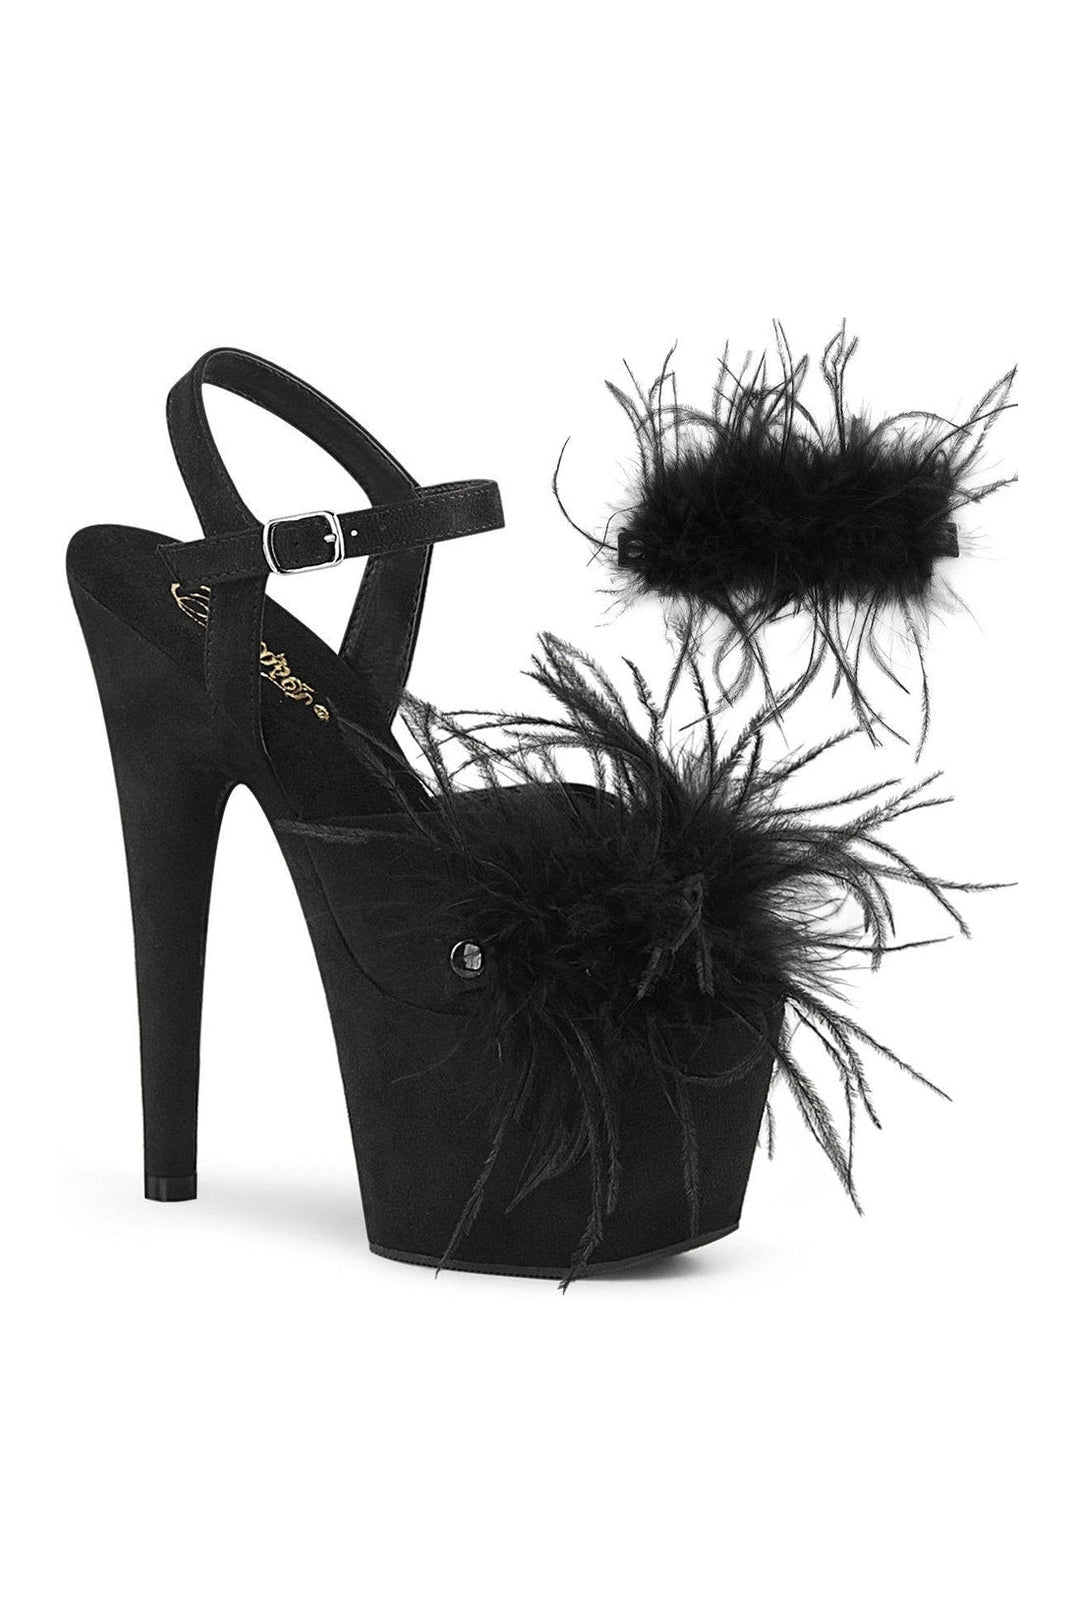 ADORE-709F Stripper Sandal | Black Faux Suede-Sandals-Pleaser-Black-5-Faux Suede-SEXYSHOES.COM